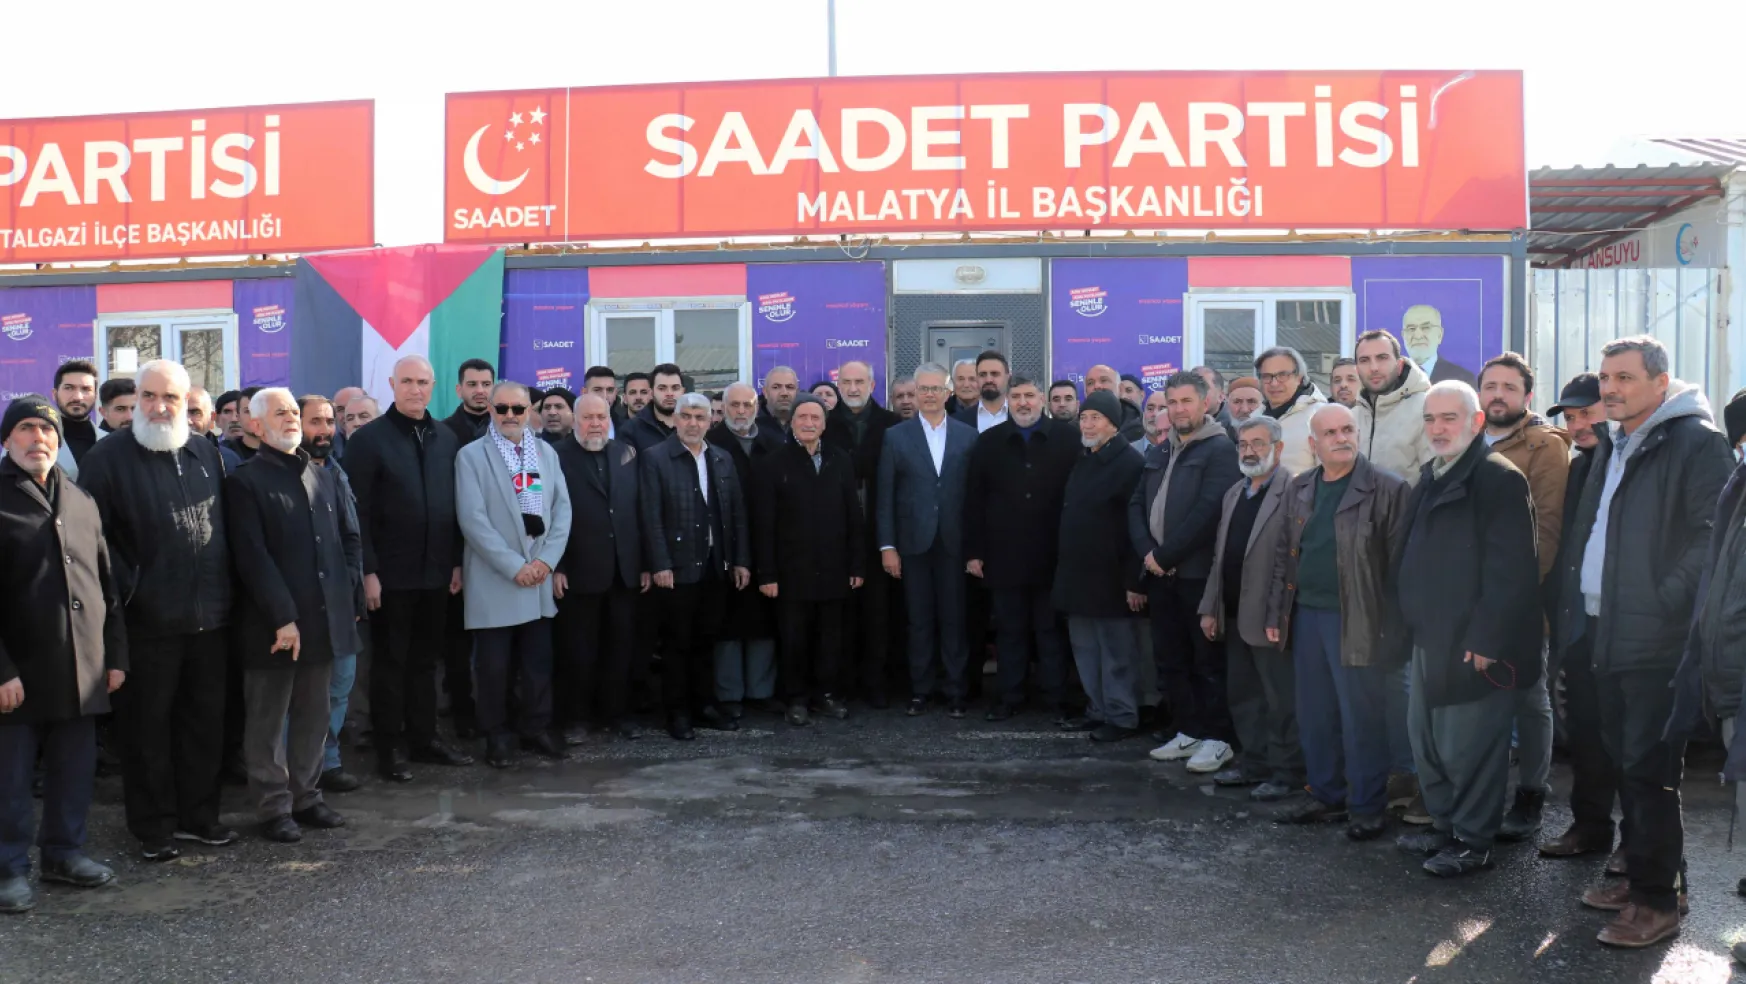 Saadet Partisi, Malatya'da Büyükşehir Adayı Prof. Dr. İbrahim Gezer'i Destekleyecek